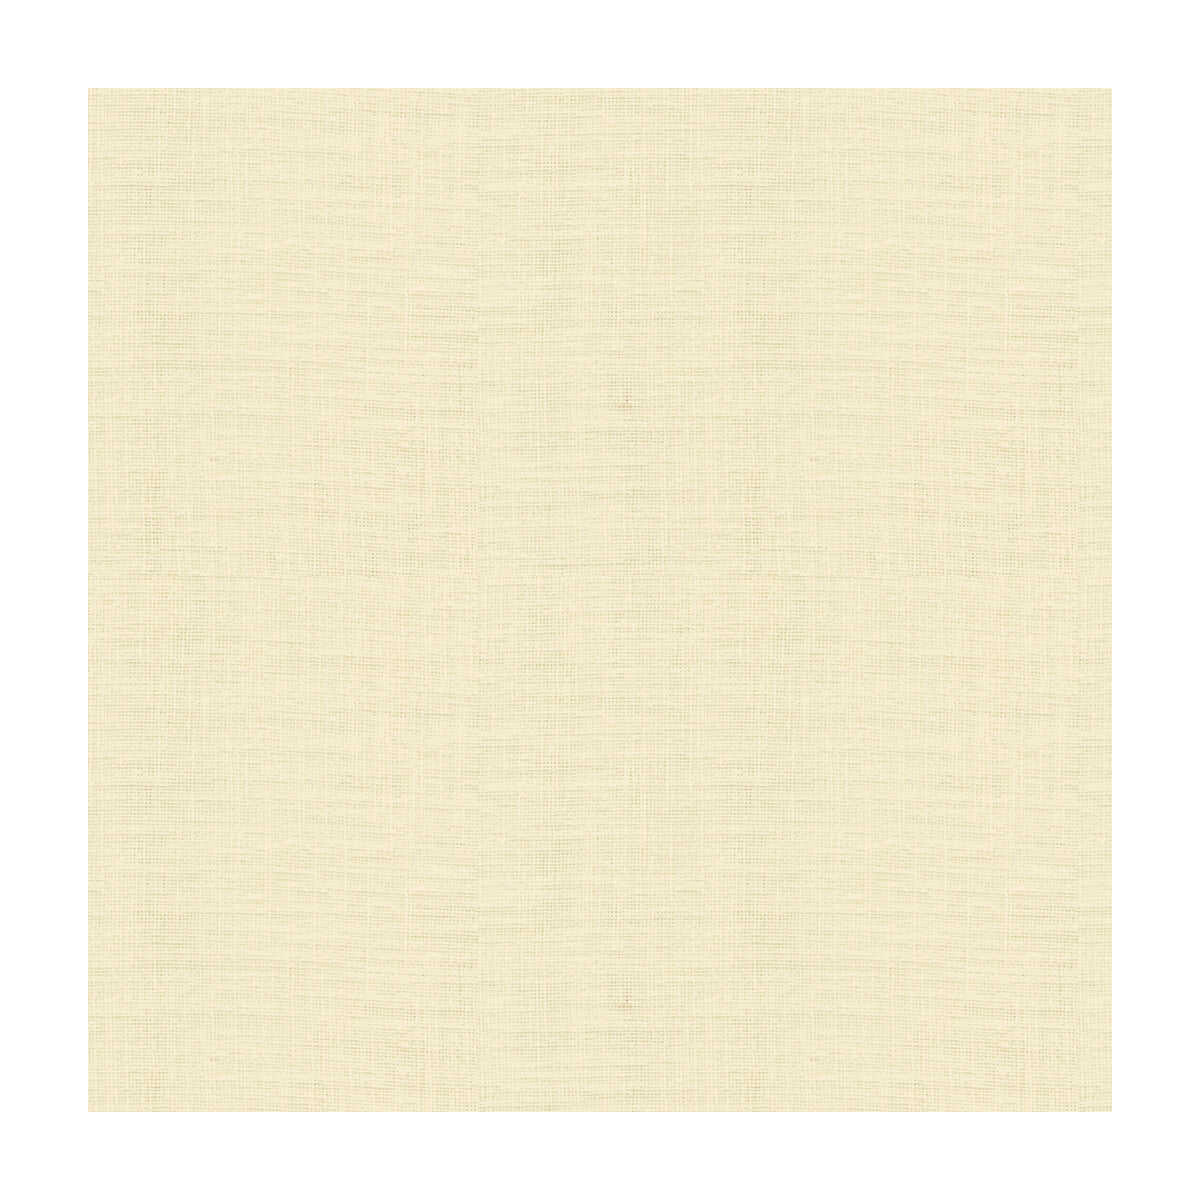 Kravet Basics fabric in 4110-111 color - pattern 4110.111.0 - by Kravet Basics